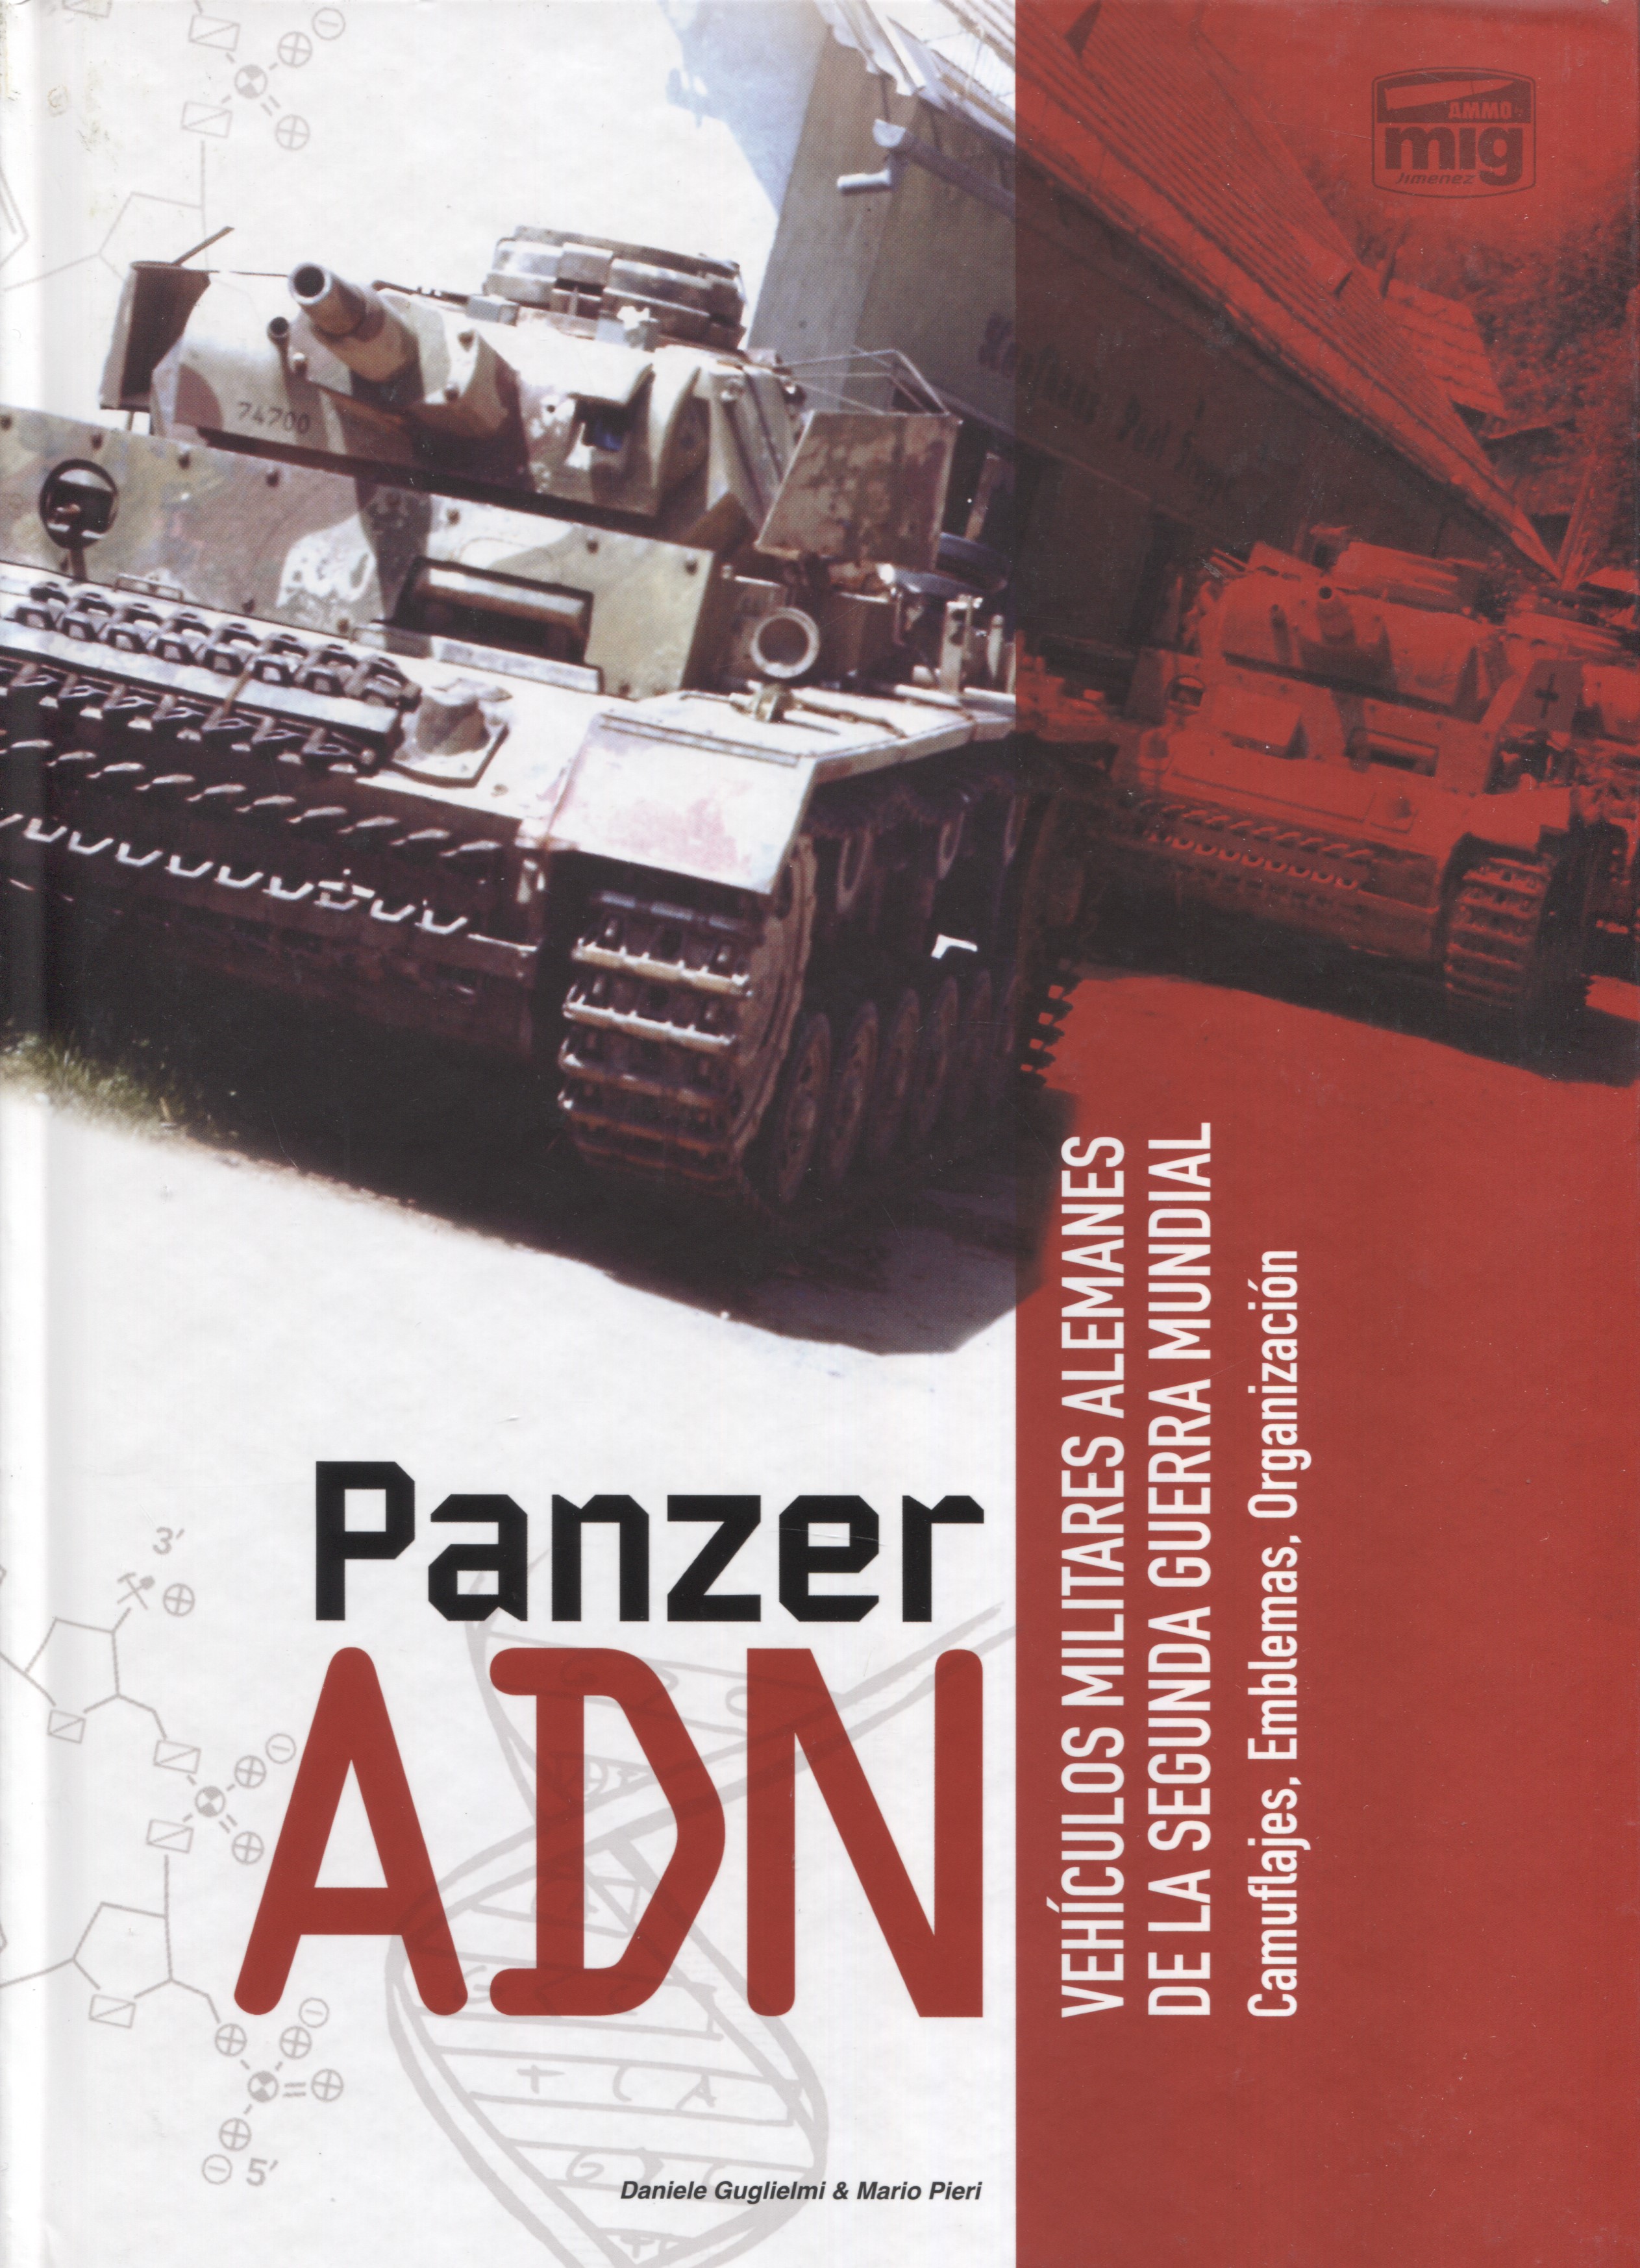 Panzer ADN